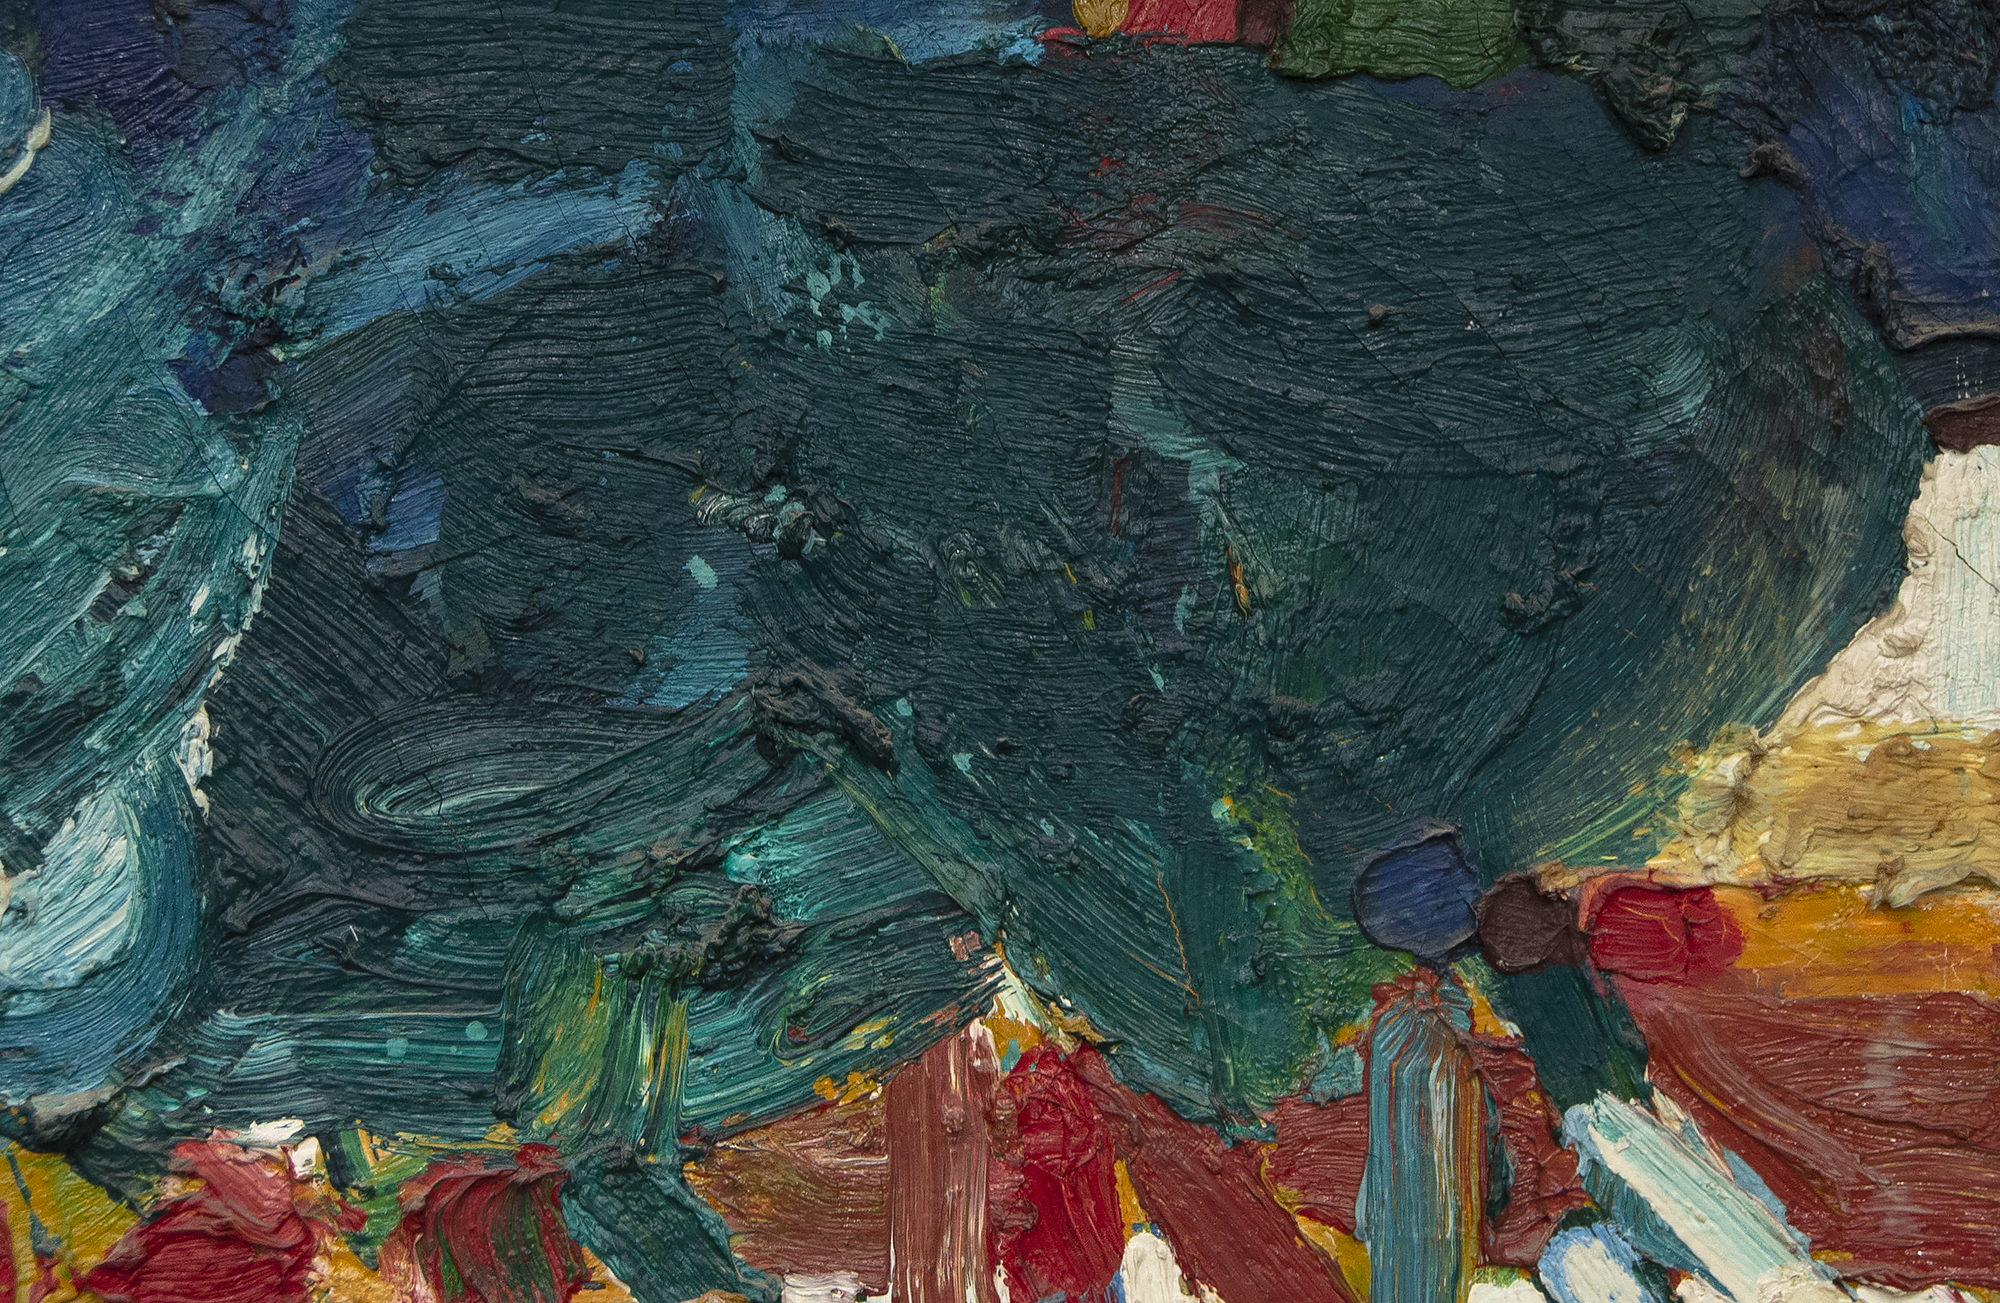 湾区艺术家罗兰·彼得森的《午餐》是1961年油画，是他最著名的野餐系列的关键一年。他这一时期的作品具有浓郁的色彩和浓郁的色彩。受汉斯·霍夫曼研究的深刻影响，彼得森尝试了抽象，在这里融合了抽象和比喻风格。在彼得森35岁时，午餐在一个时间范围内，包括他1962年在纽约施泰姆普夫利画廊的一人秀，他在洛杉矶的埃斯特-罗伯斯的独奏展，以及古根海姆奖学金，提供了机会在巴黎学习。